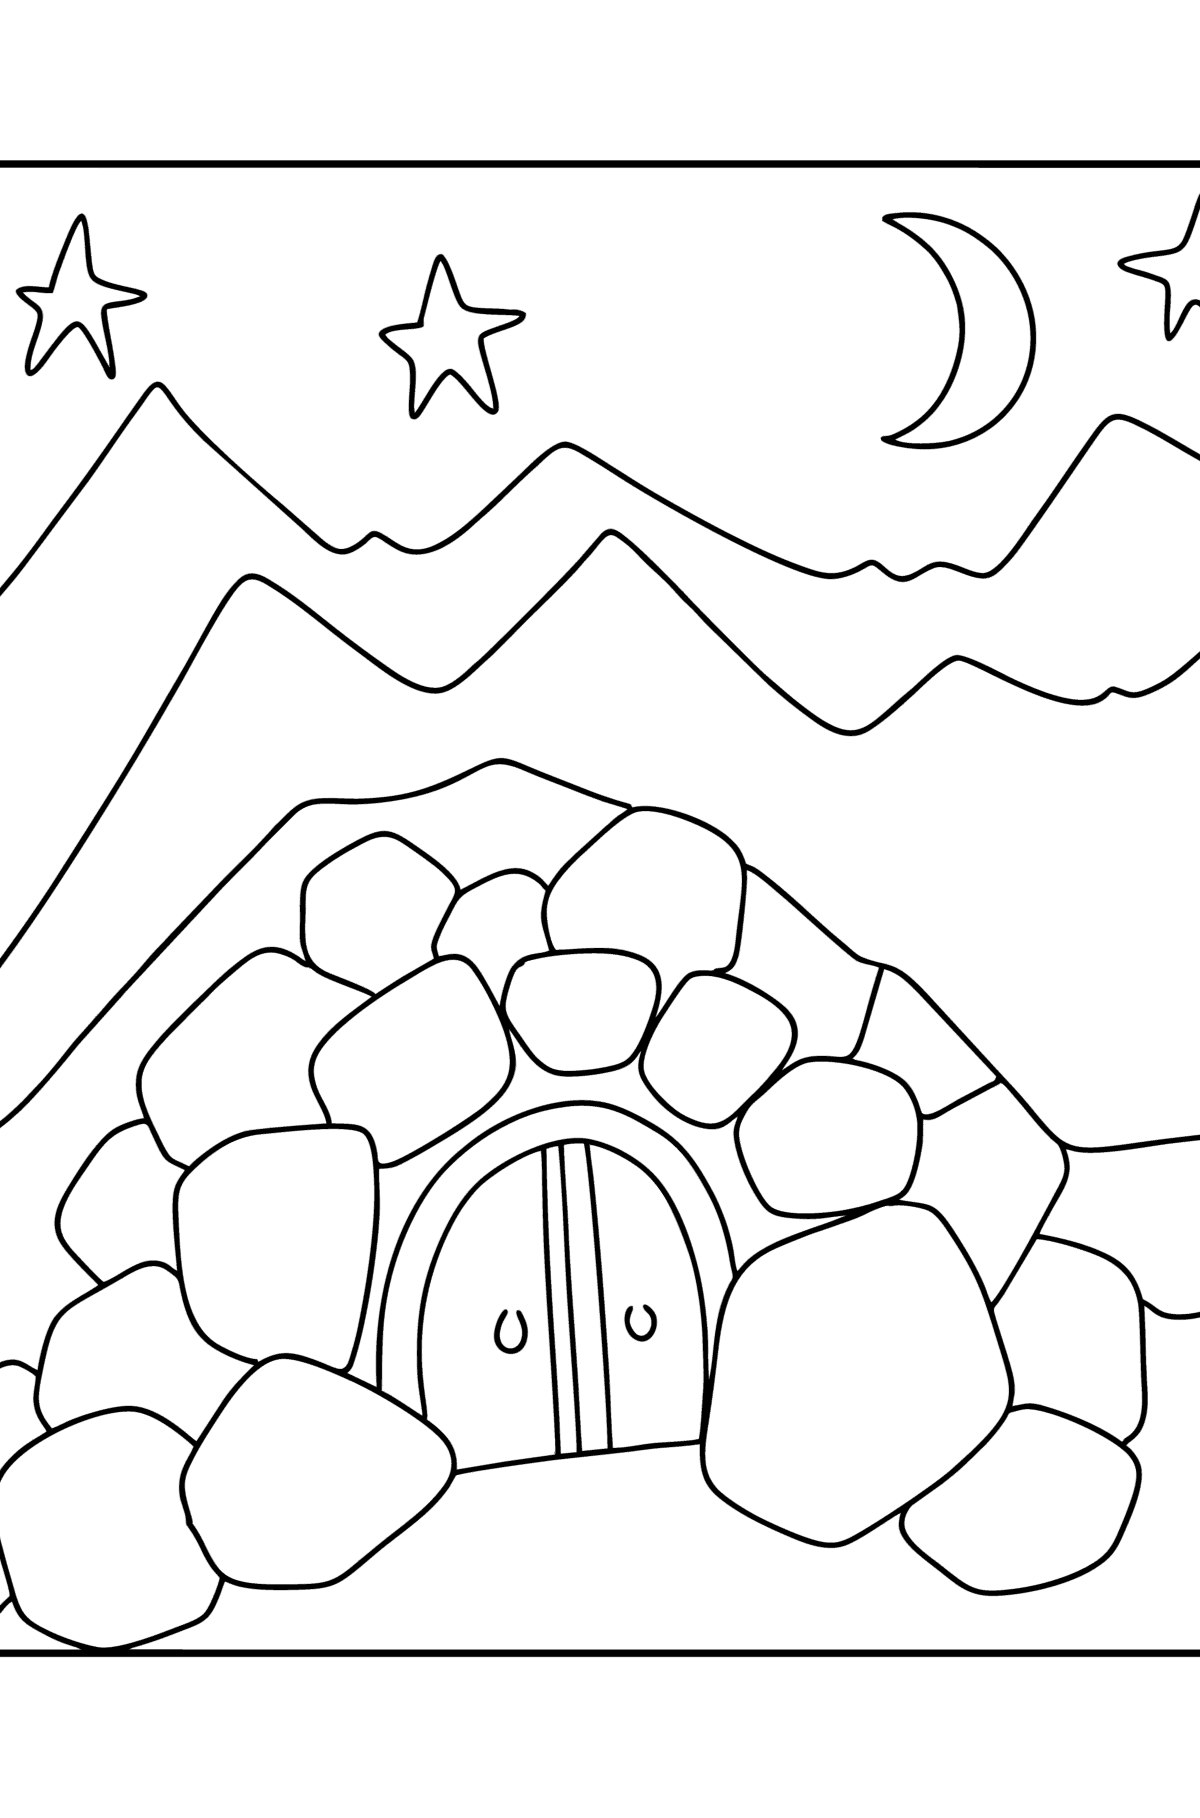 Раскраска Пещера али бабы - Картинки для Детей